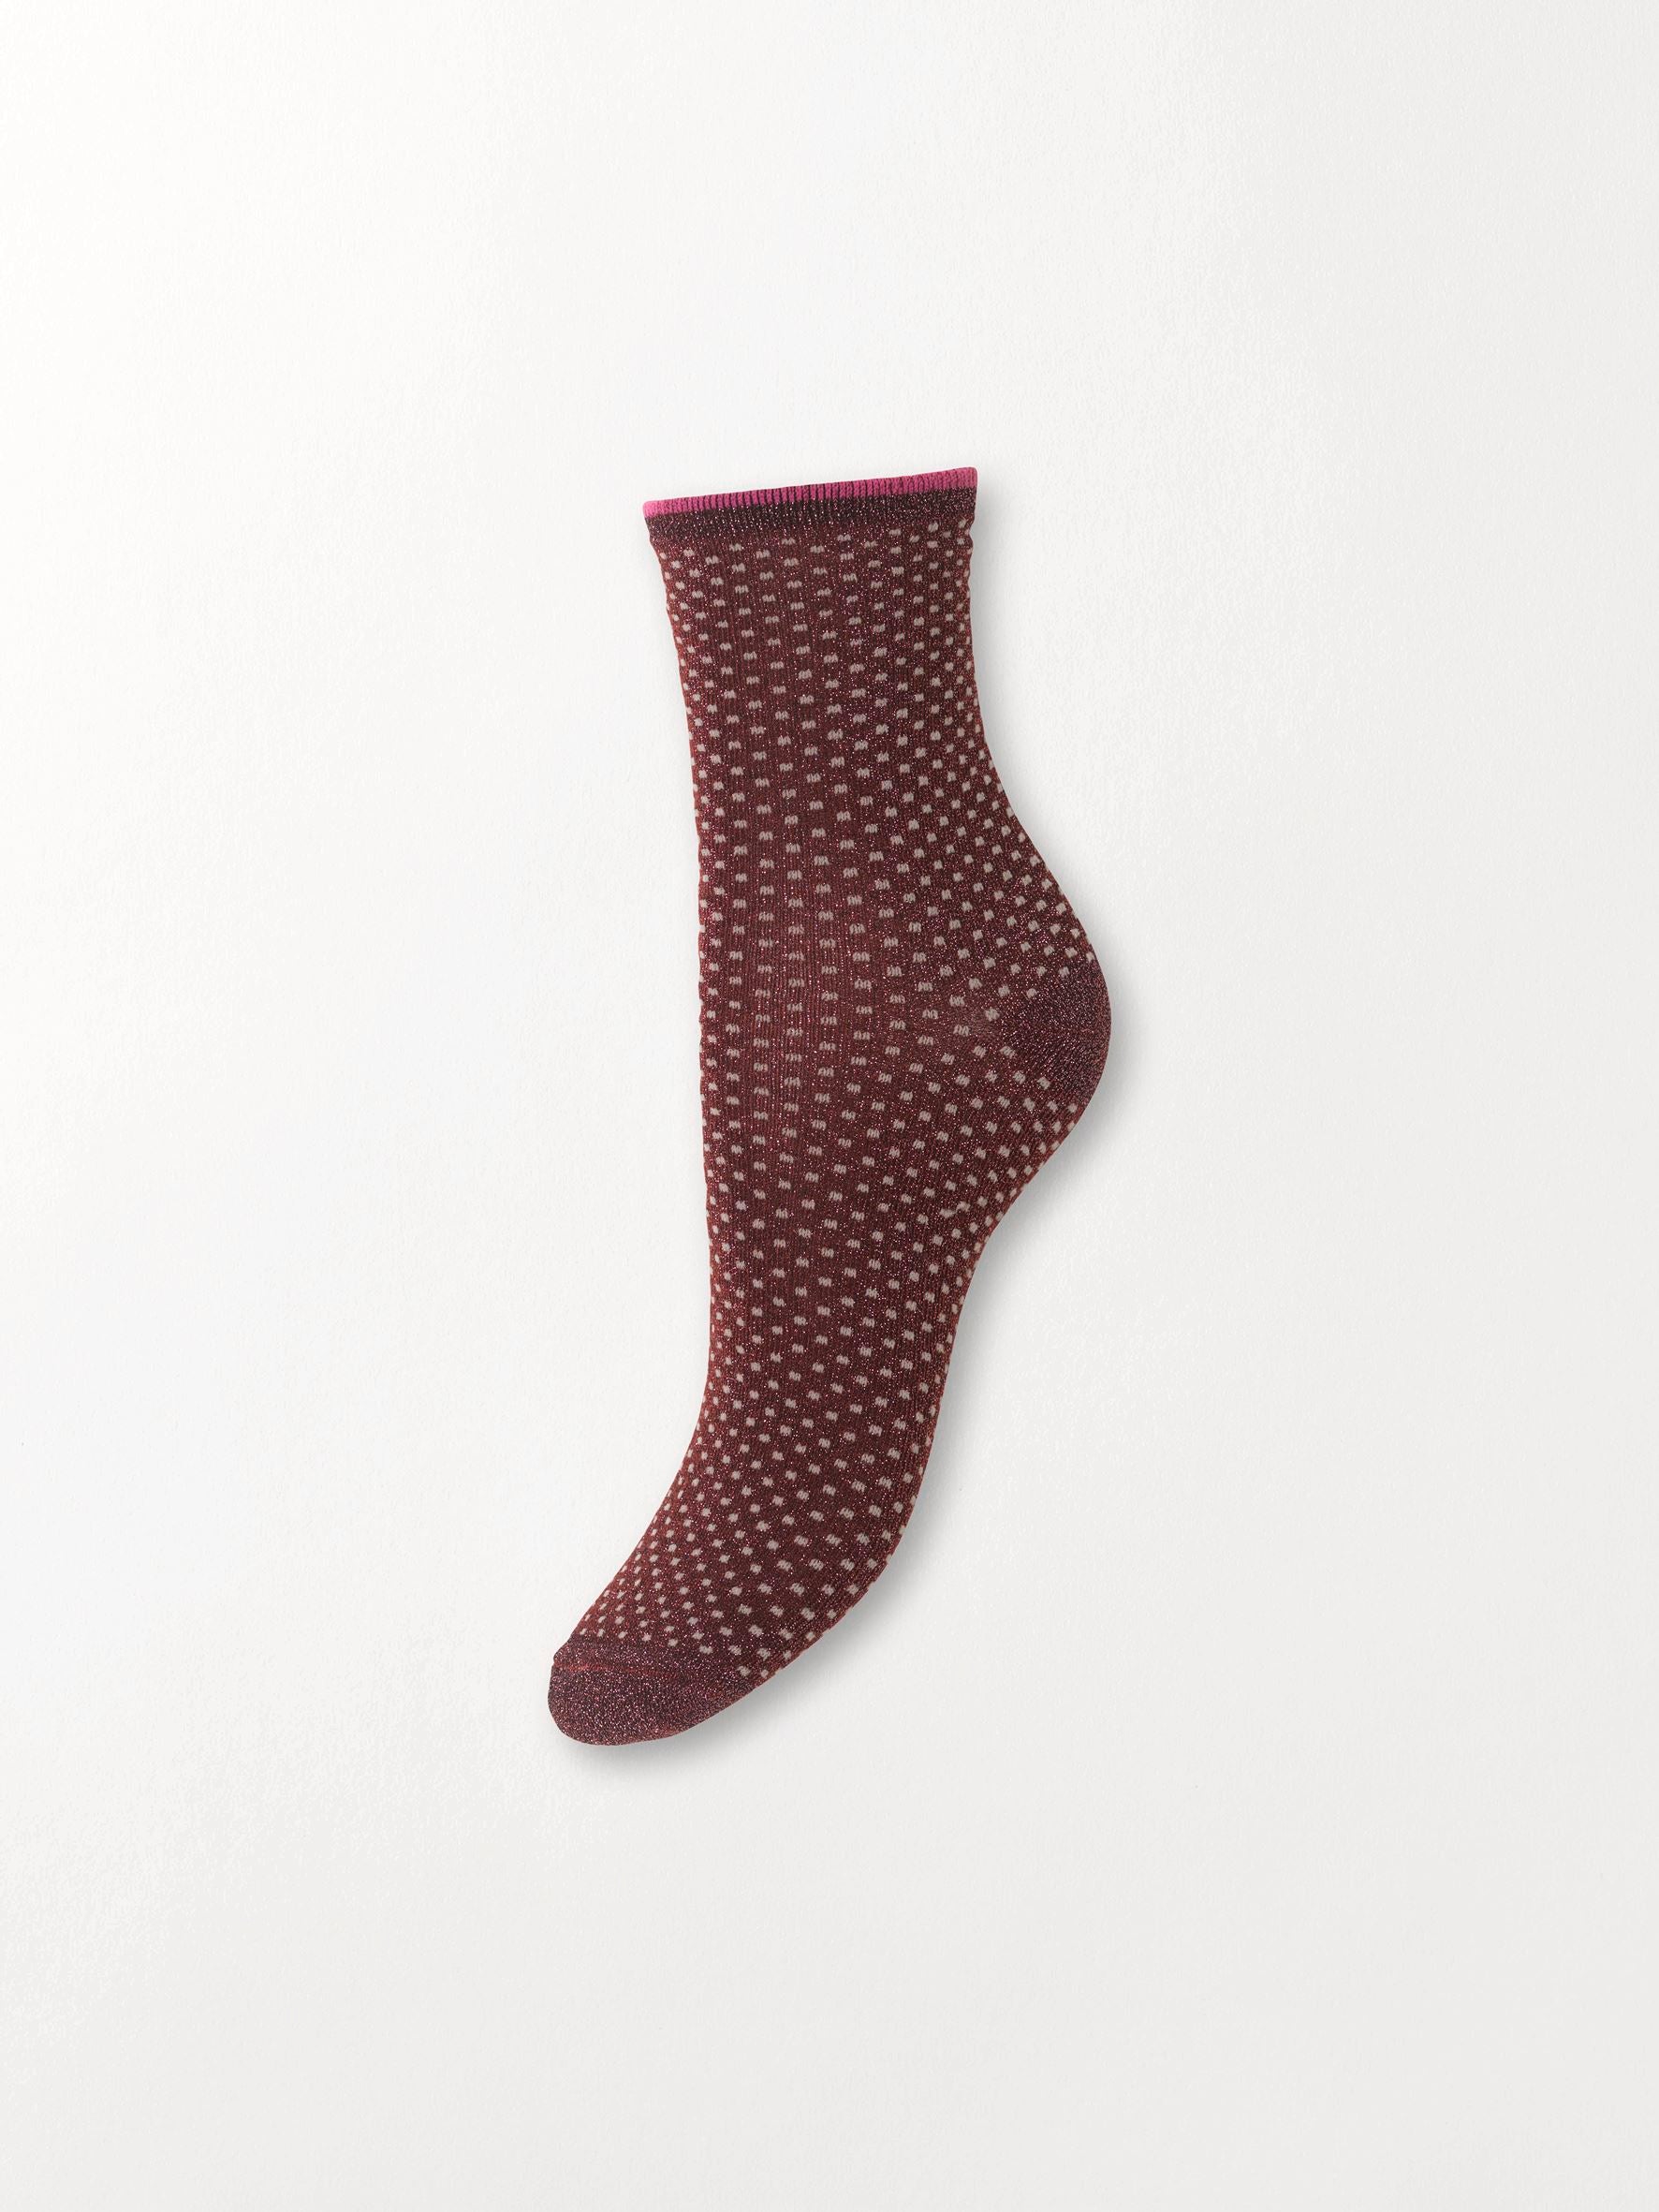 Becksöndergaard, Dina Small Dots Coll. - Mahogany, socks, socks